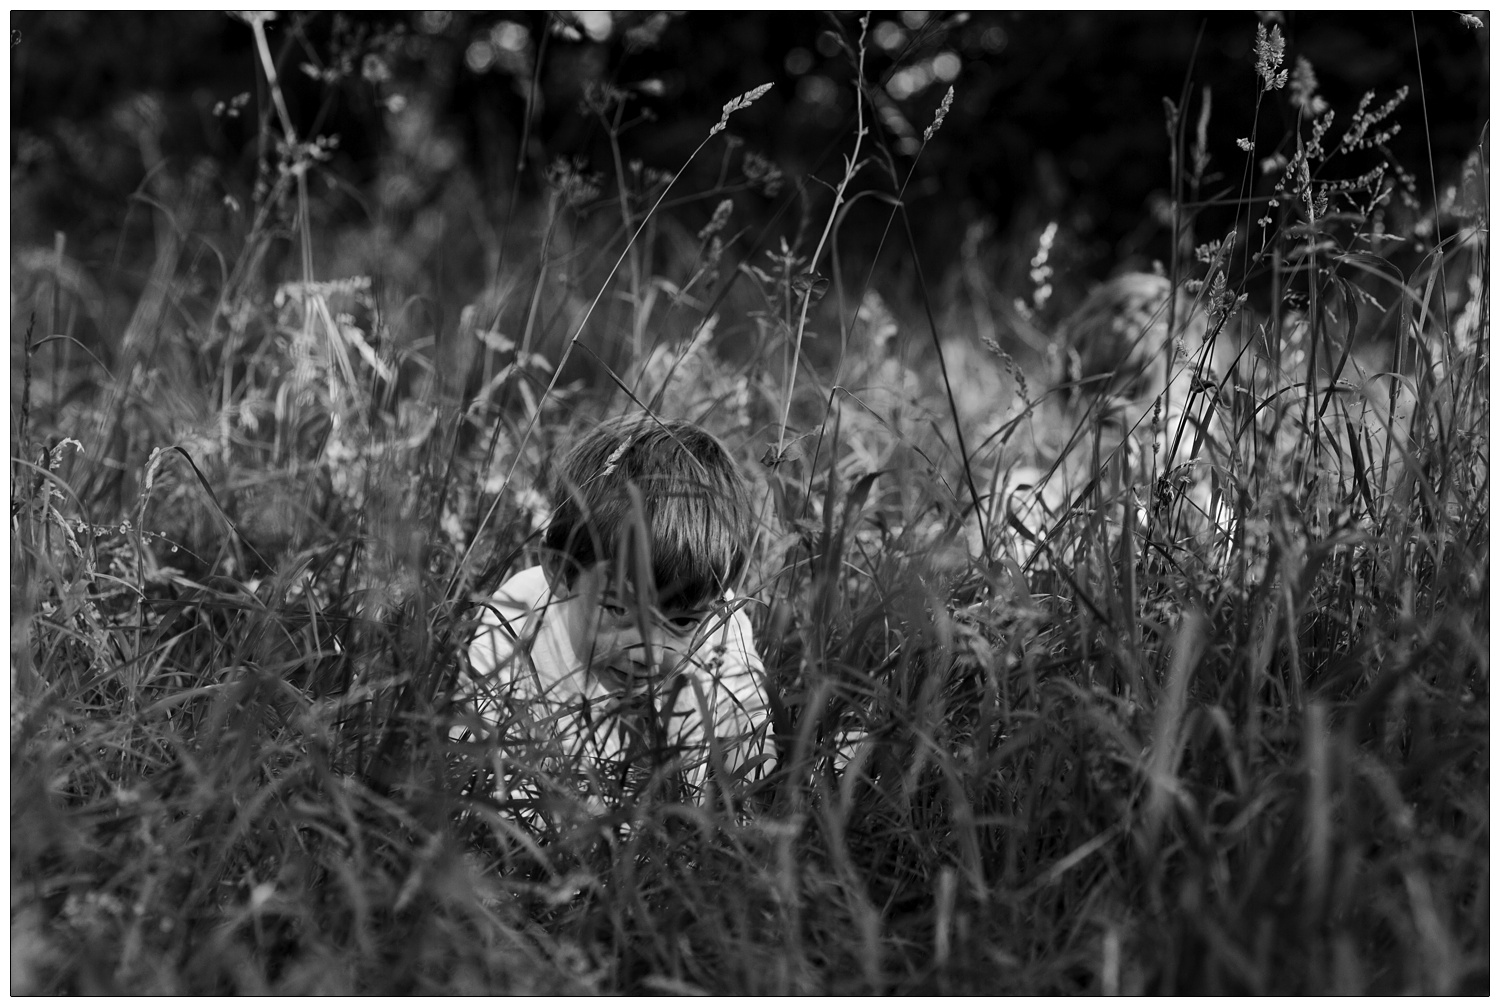 A little boy hiding in the grass.